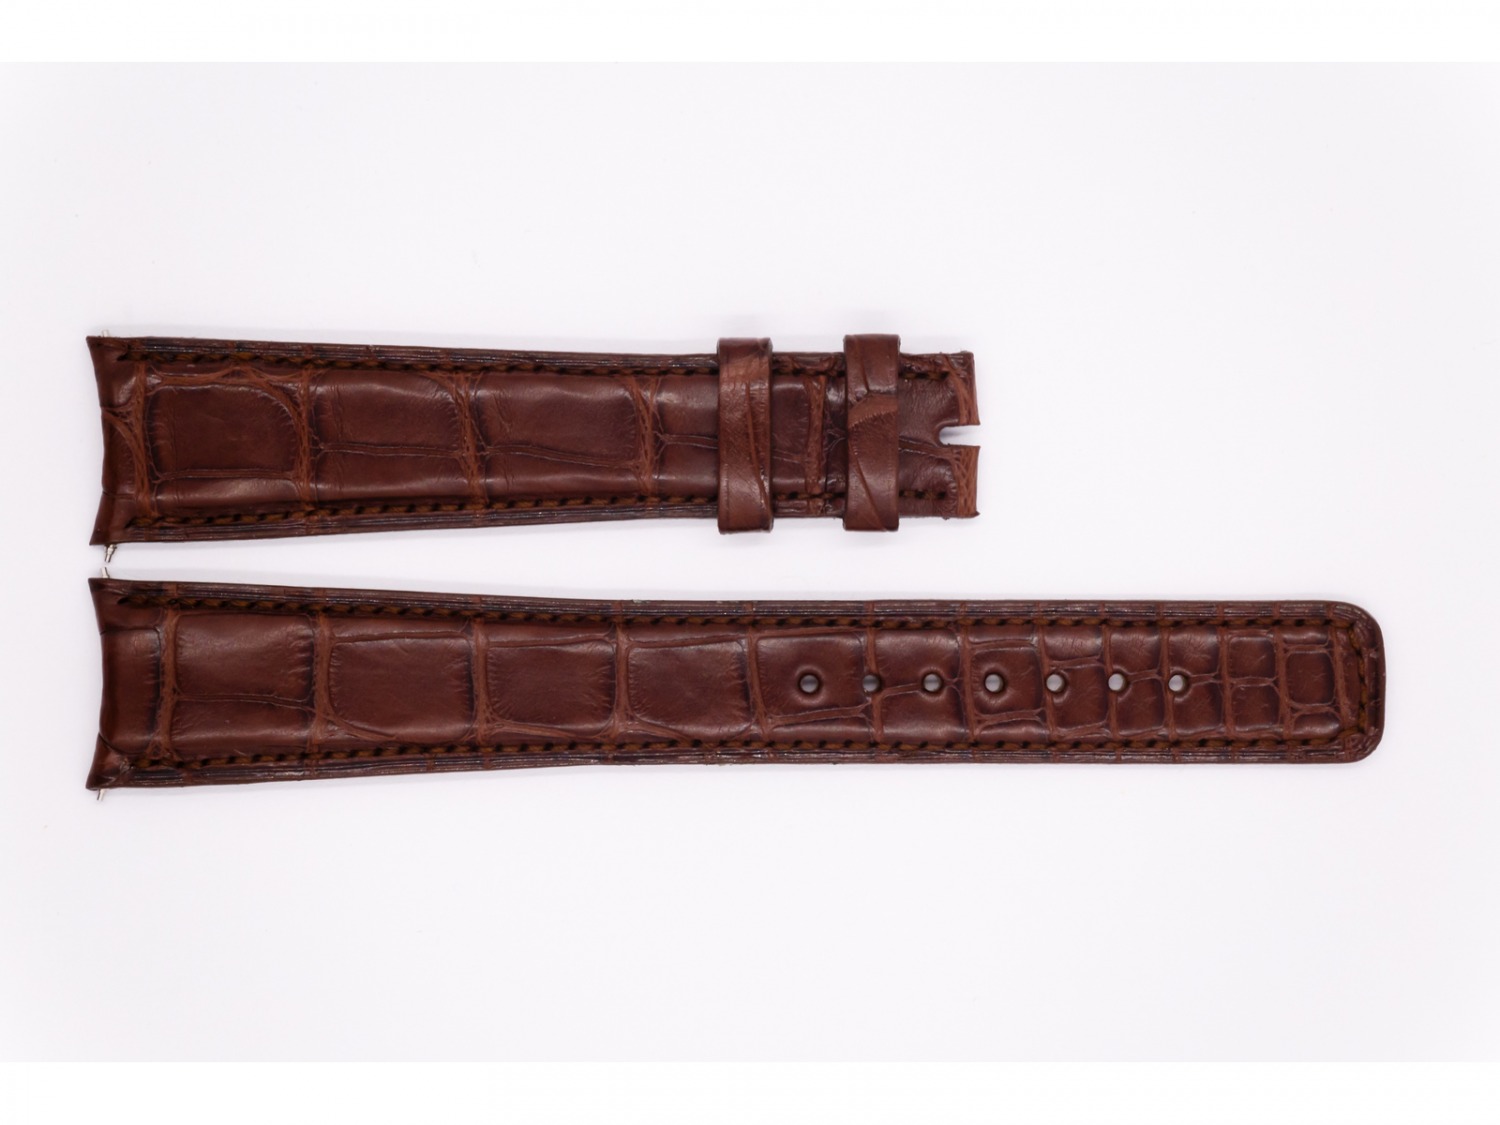 Leather Pierre Kunz Strap, dark brown